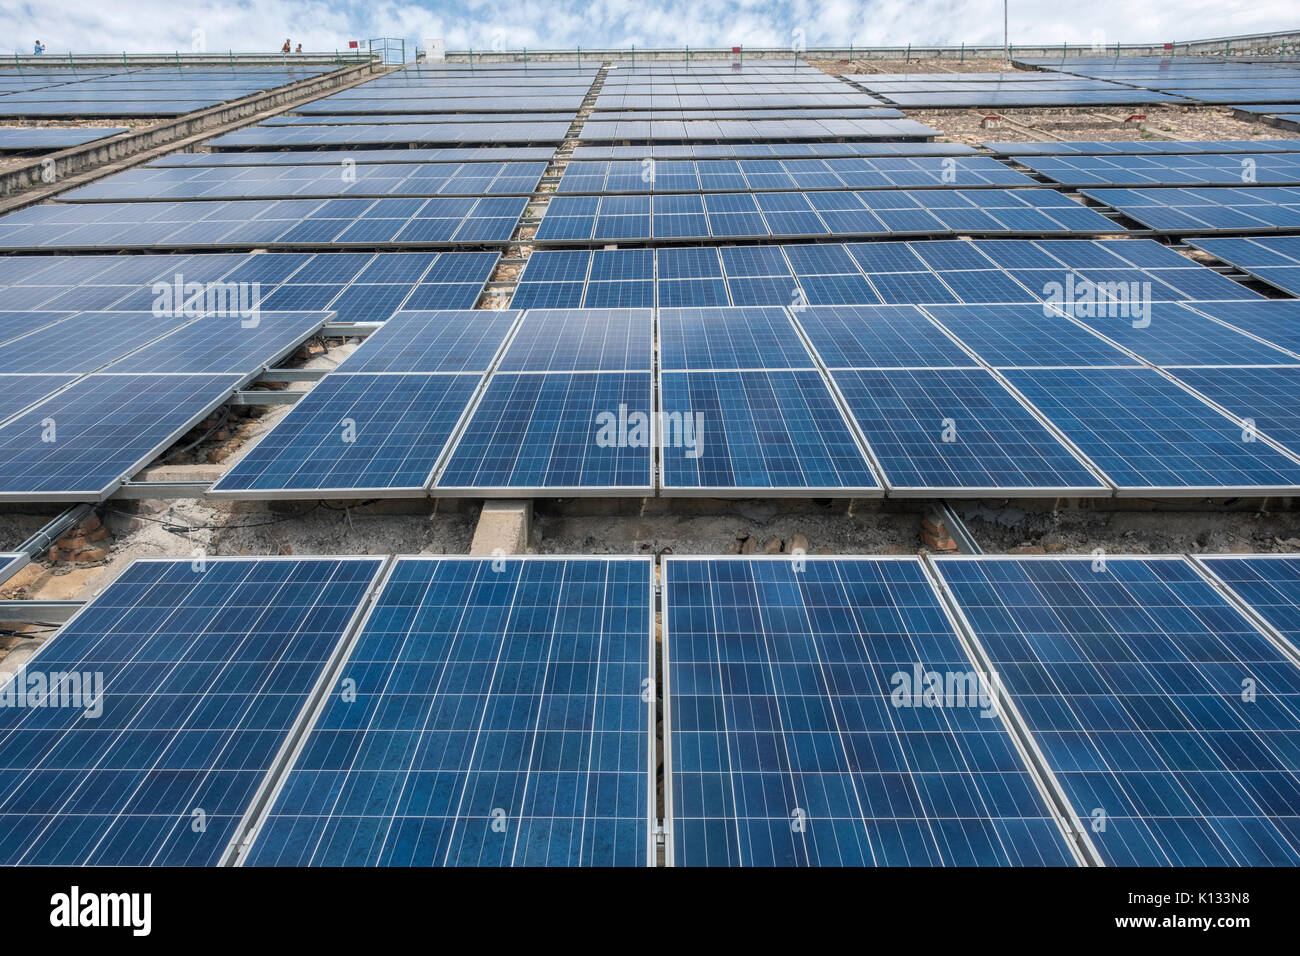 Des panneaux solaires photovoltaïques sur le barrage de Yanqi Lake à Huairou, Beijing, Chine. 24-Aug-2017 Banque D'Images